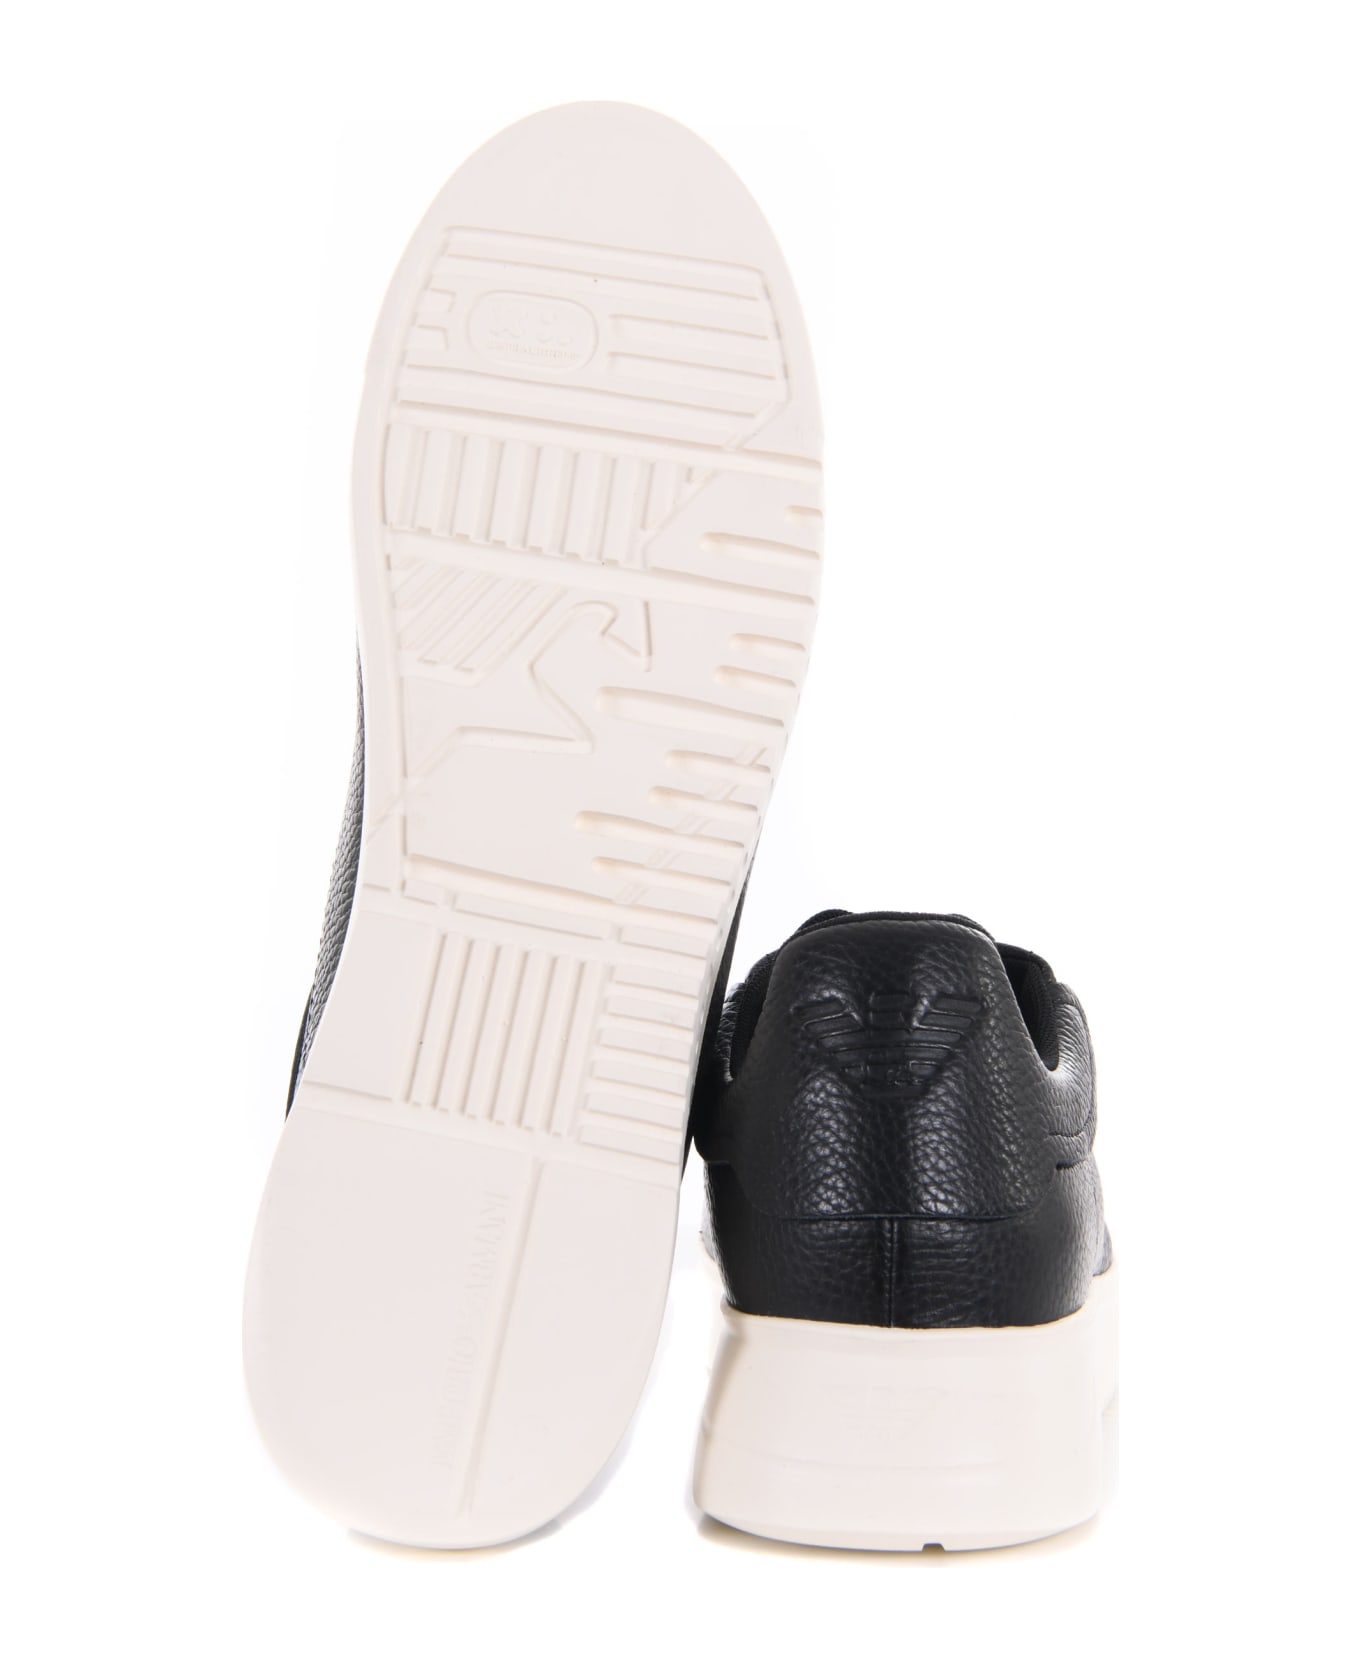 Emporio Armani Leather Sneakers - Nero